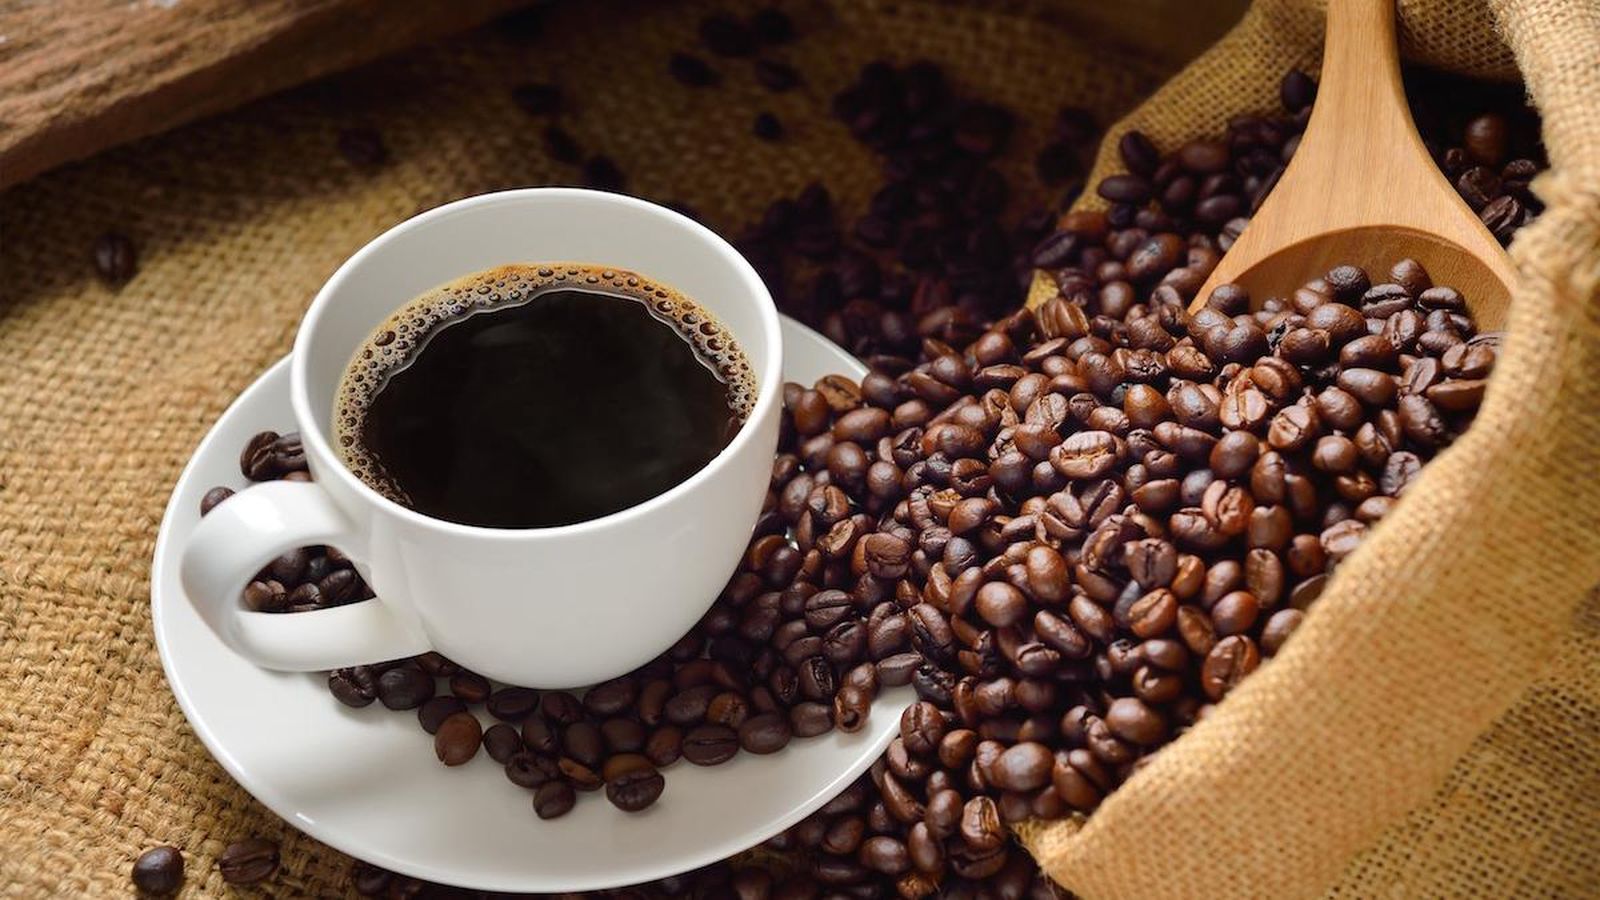 Nariadenie Európskej únie povedie k zvýšeniu cien kávy, obáva sa jej výrobca